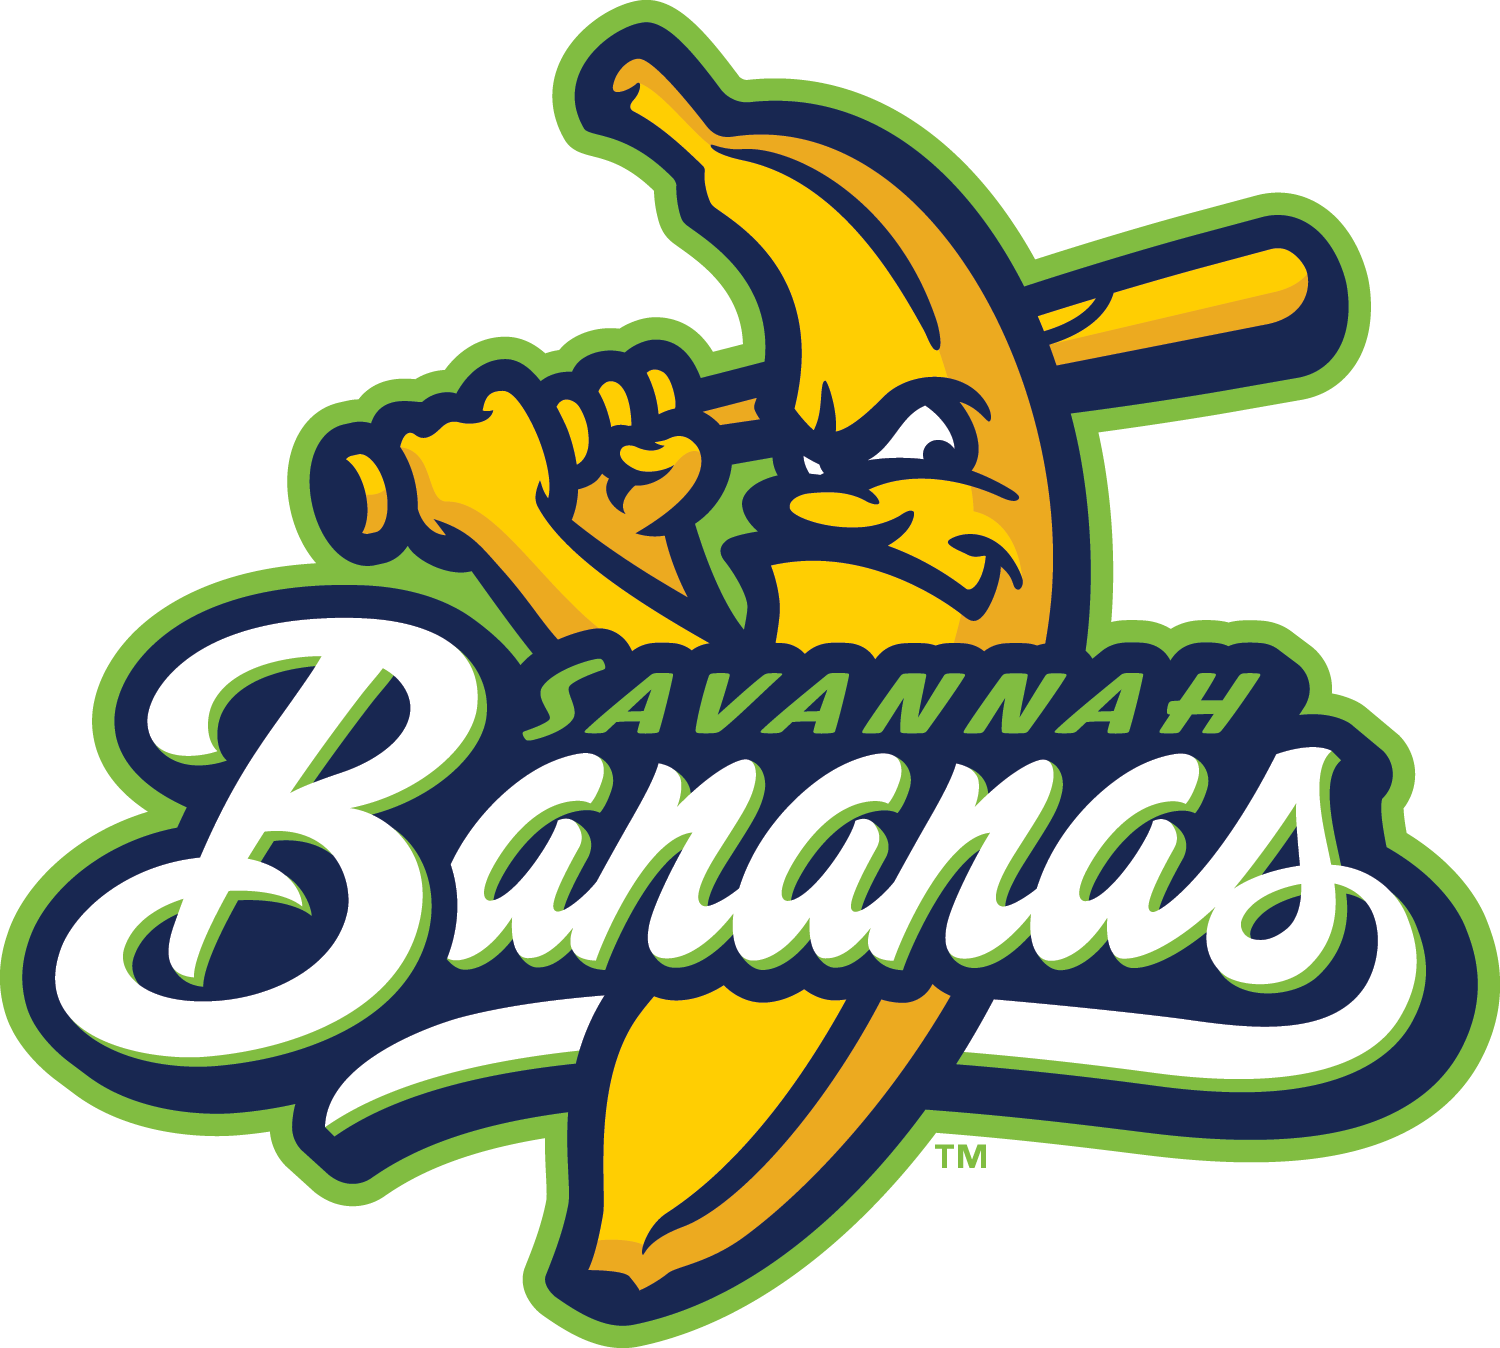 Savannah Logo